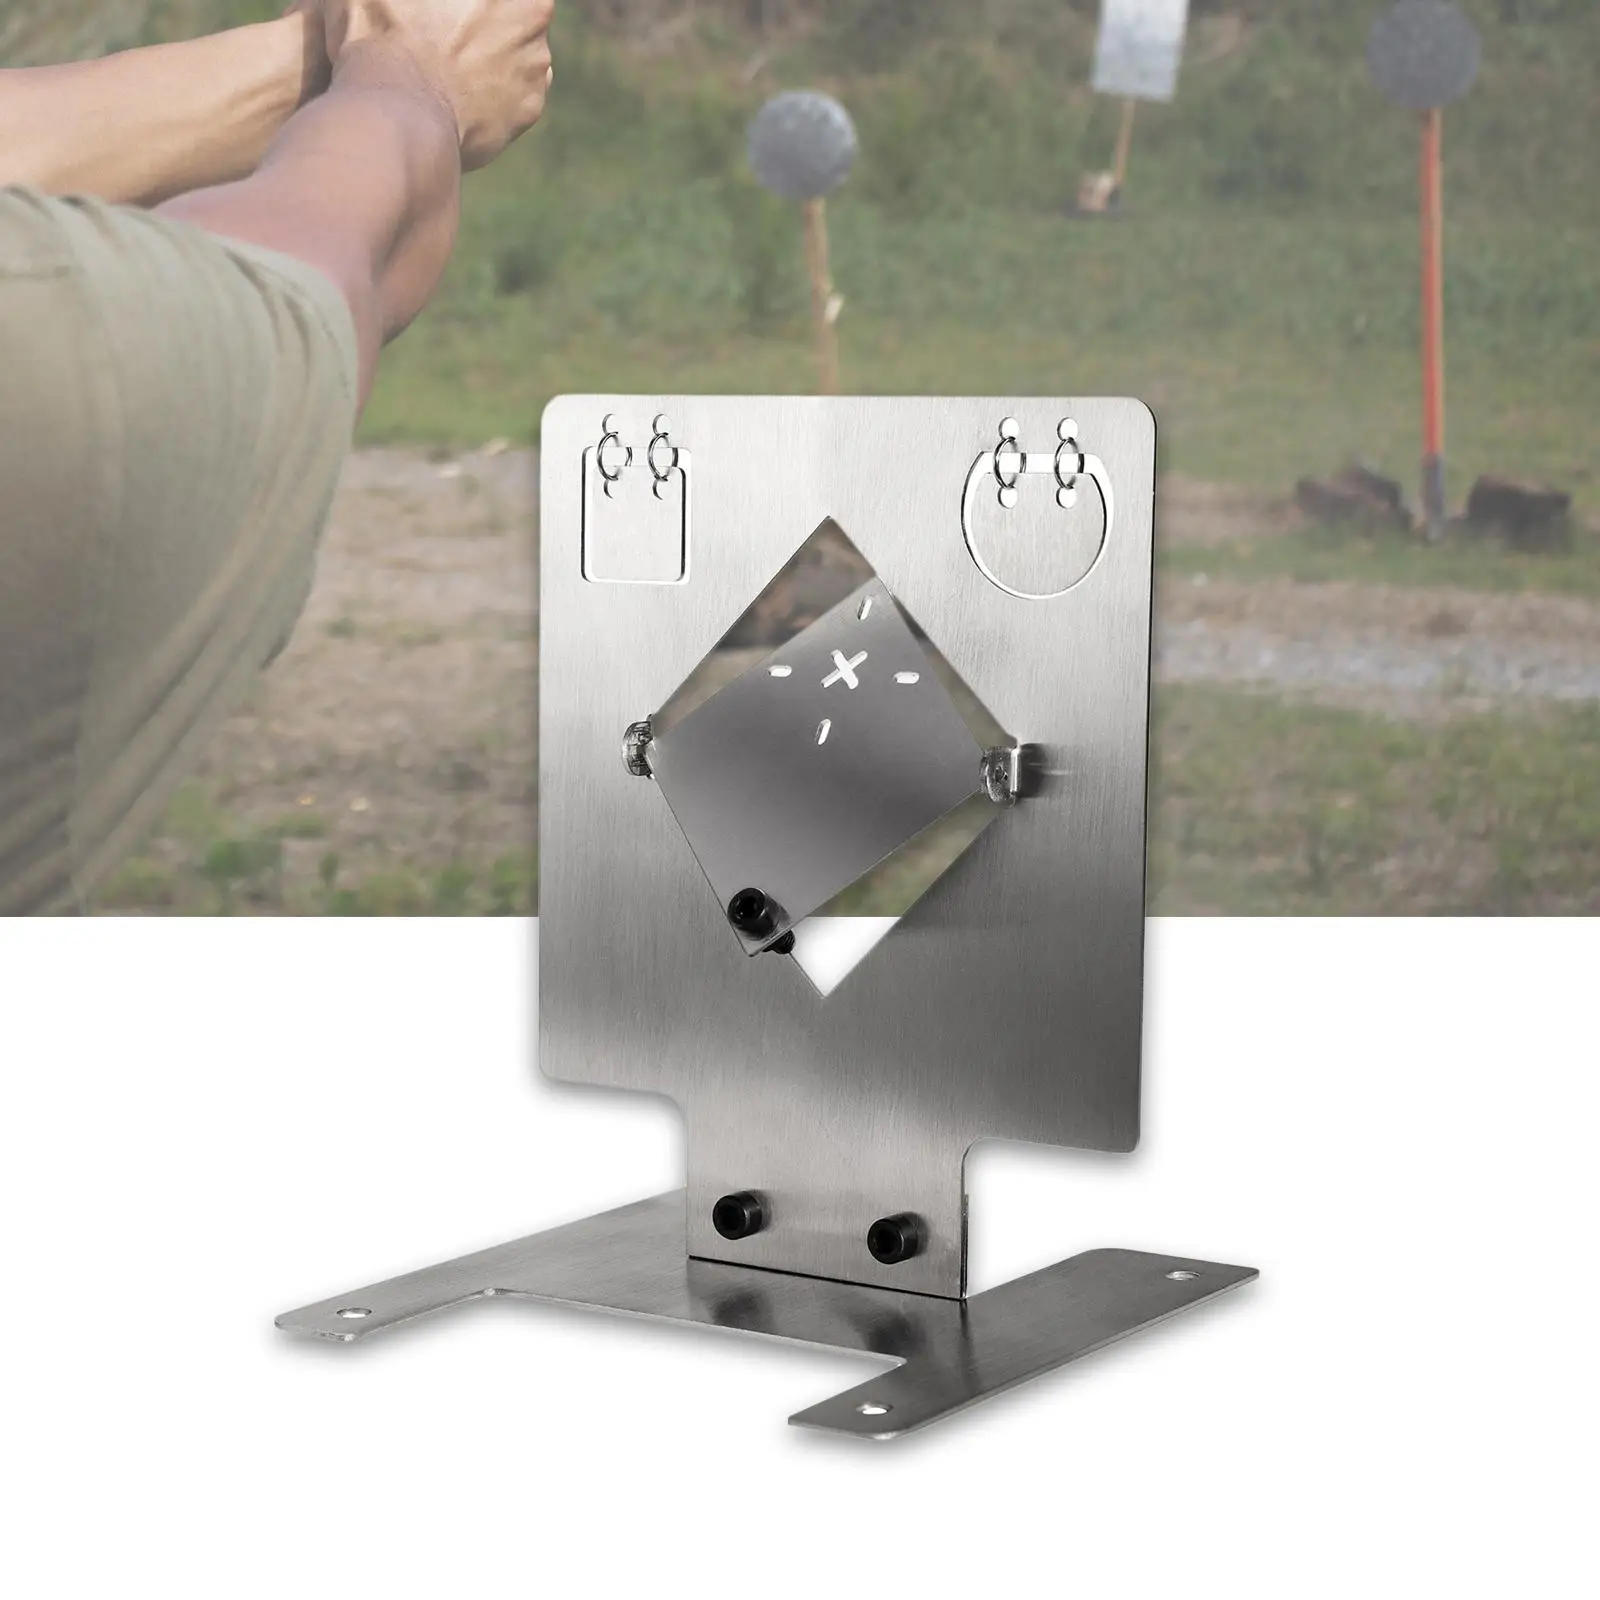 Stainless Steel Target Hanging Ring Design Shooting Training Games Targets